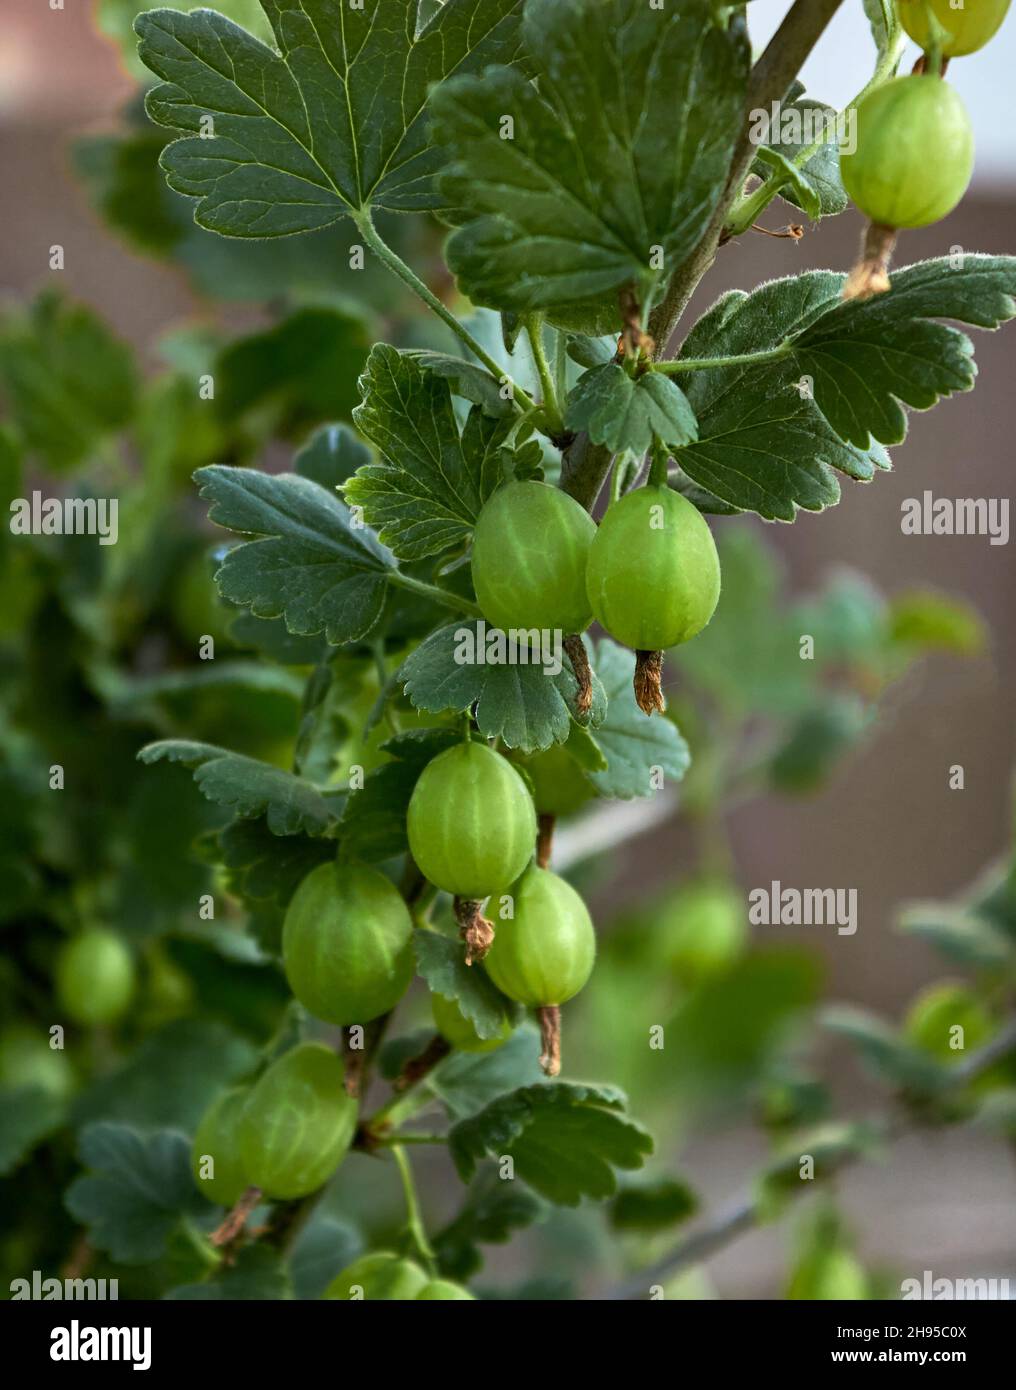 Le bacche di uva verde fresche vengono speziate su un ramo in una giornata estiva in giardino. Vista ravvicinata della bacca d'oca biologica appesa a un ramo. Foto Stock